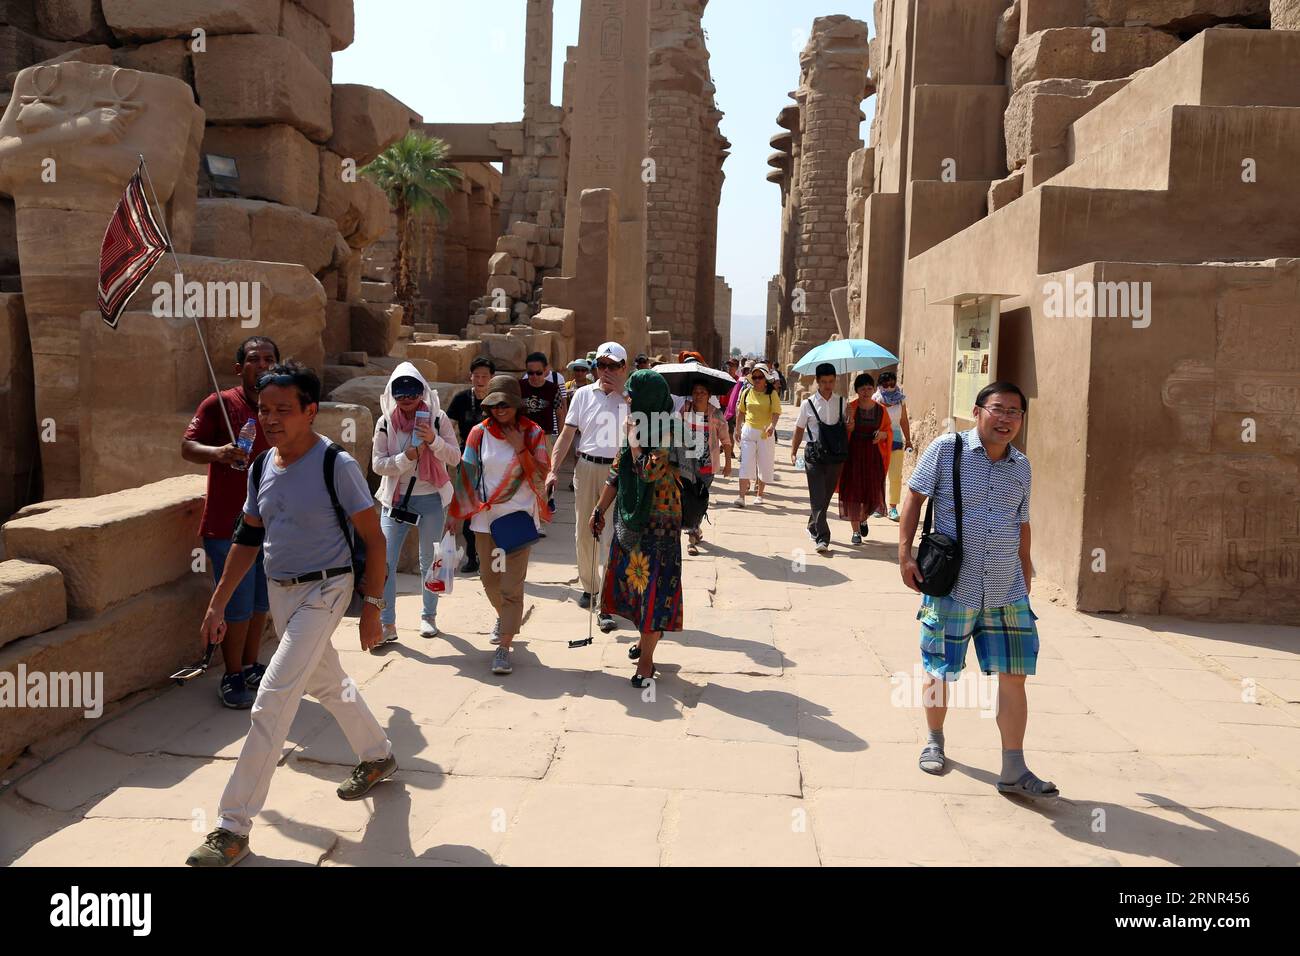 (170917) -- LOUXOR (ÉGYPTE), 17 septembre 2017 -- des touristes chinois visitent le temple Karnak à Louxor, Égypte, le 10 septembre 2017. L'Egypte est impatiente de puiser dans le marché chinois pour relancer son industrie touristique en difficulté, a déclaré Mohamed Badr, gouverneur du gouvernorat égyptien de Louxor, à Xinhua dans une récente interview. La Chine est devenue le quatrième exportateur de touristes vers l'Égypte depuis le début de 2017. Les chiffres officiels de l'ambassade égyptienne à Pékin montrent un total de 147 000 touristes chinois ont visité l'Égypte au cours des cinq premiers mois de 2017, marquant une augmentation de 94 pour cent par rapport à la même période l'an dernier. ÉGYPTE-LUX Banque D'Images